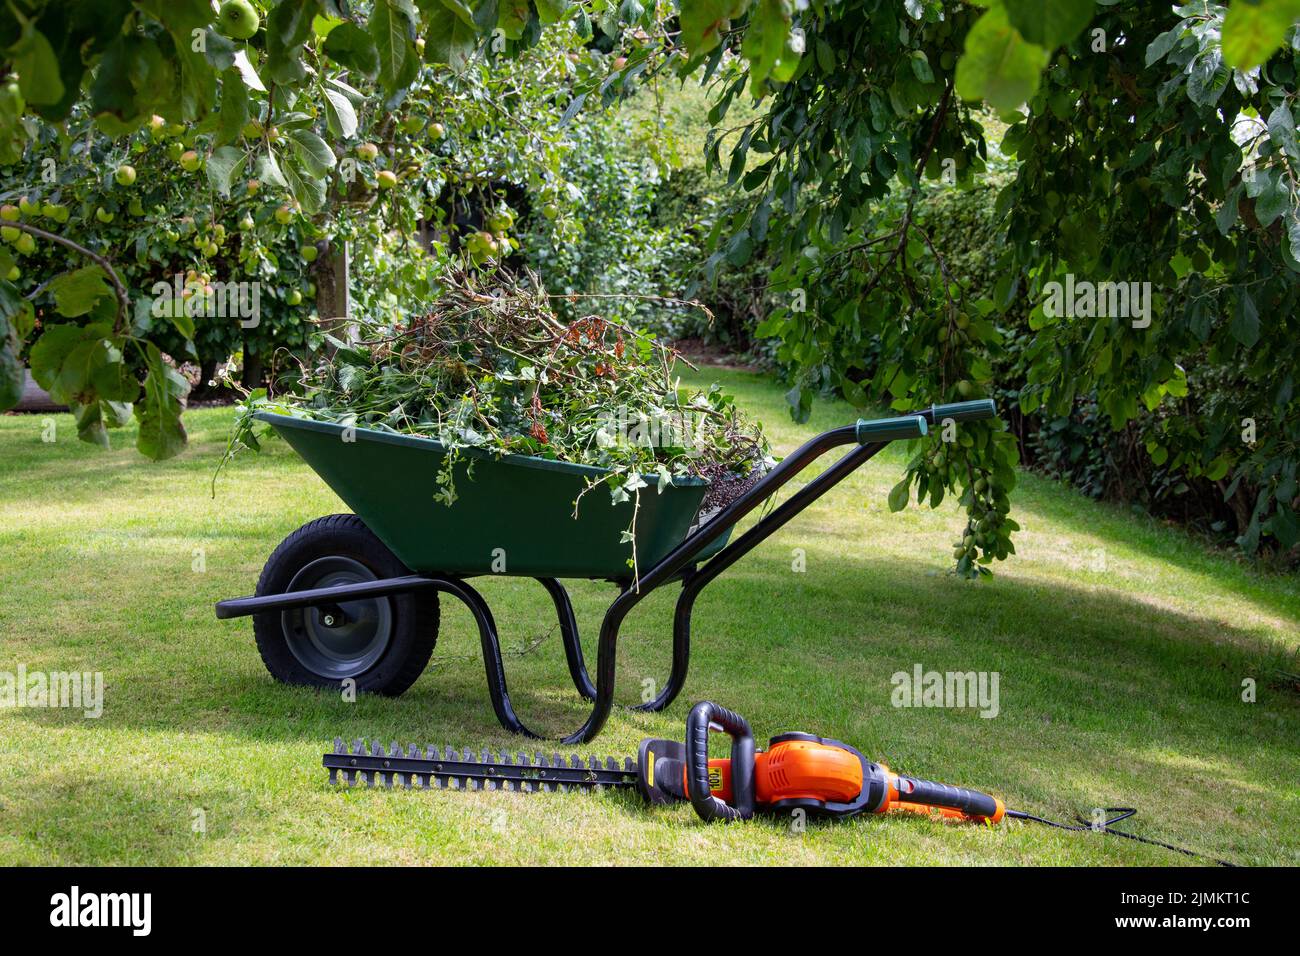 Jardinería - Wheelbarrow lleno de esquejes de seto junto a un cortapatillas eléctrico. Foto de stock